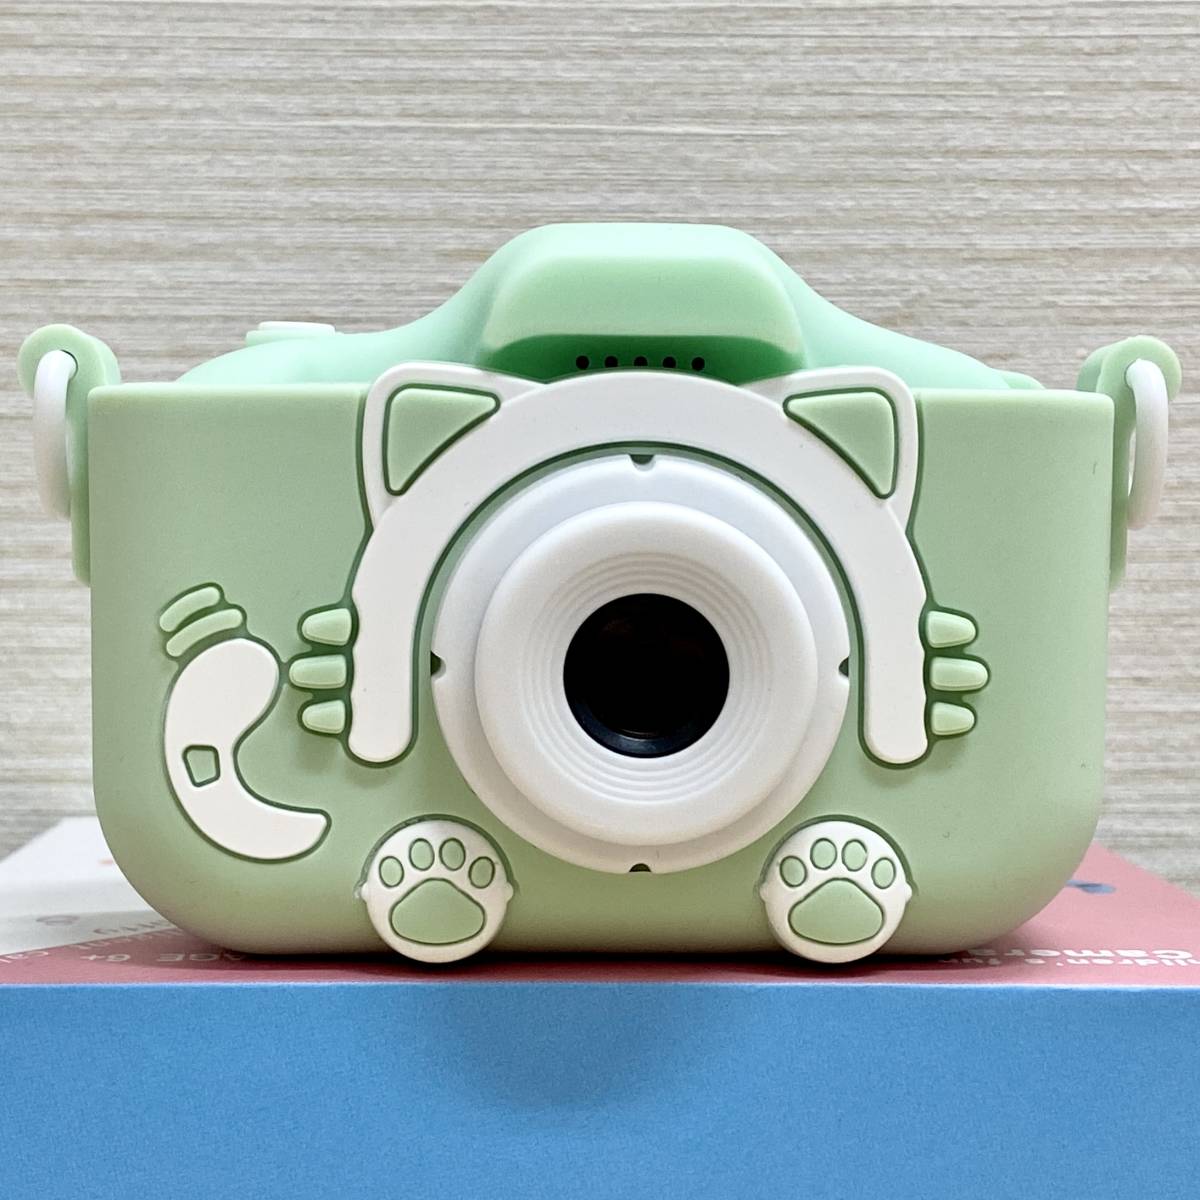 【動作確認済み】キッズカメラ グリーン SDカード32GB付 トイカメラ デジカメ コンデジ 緑色 多機能 長期保管品 ほぼ未使用_画像3